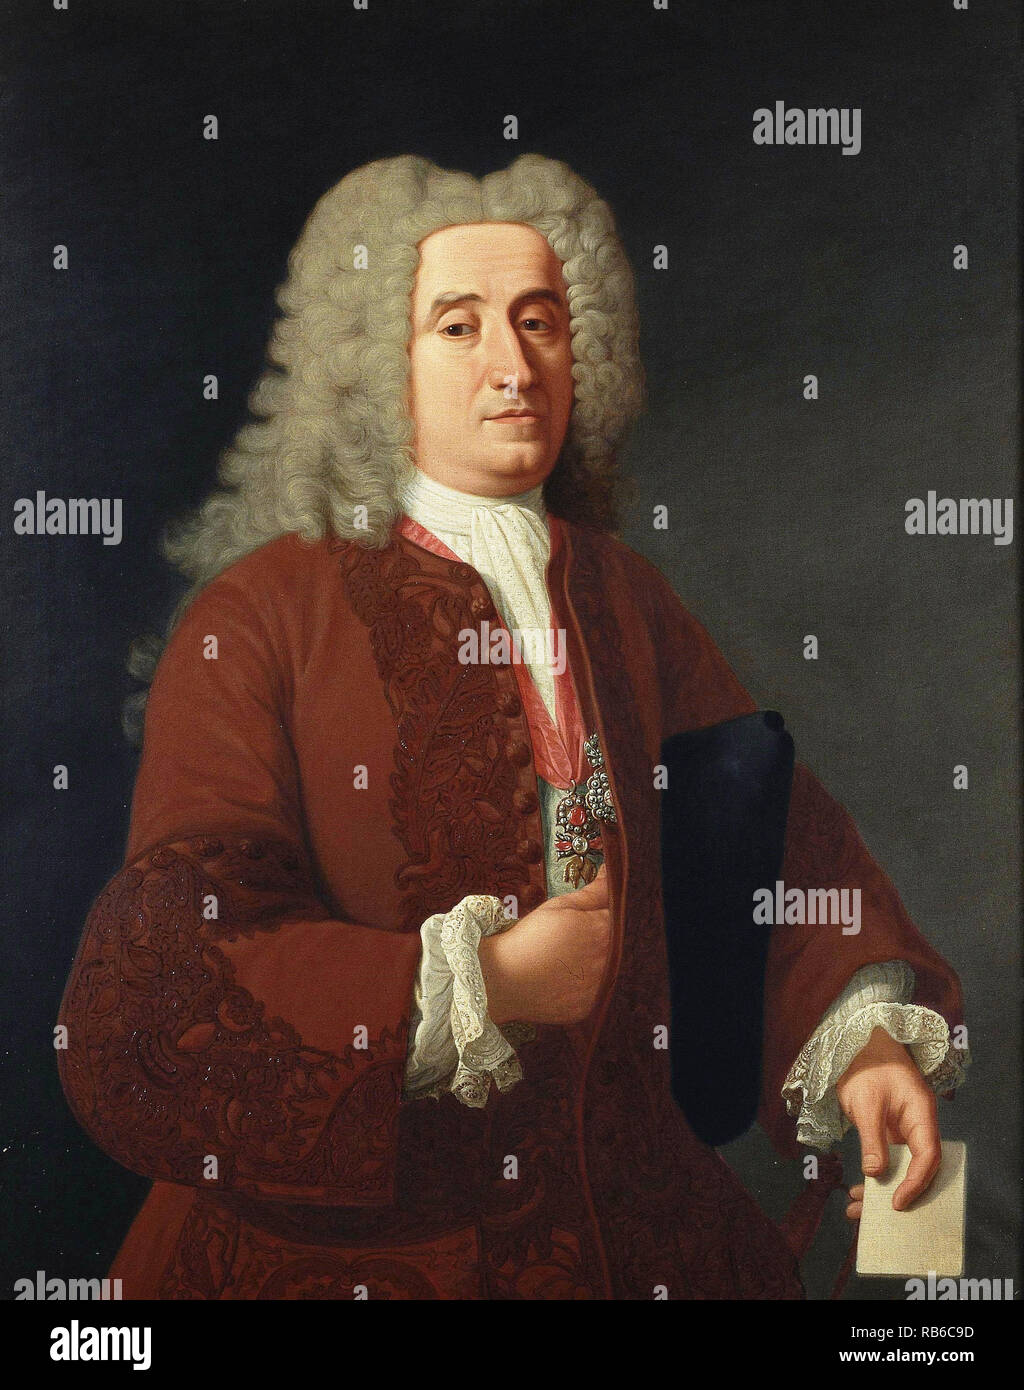 José Patiño Rosales, Don José Patiño y Rosales (1666 - 1736) estadista Español Foto de stock